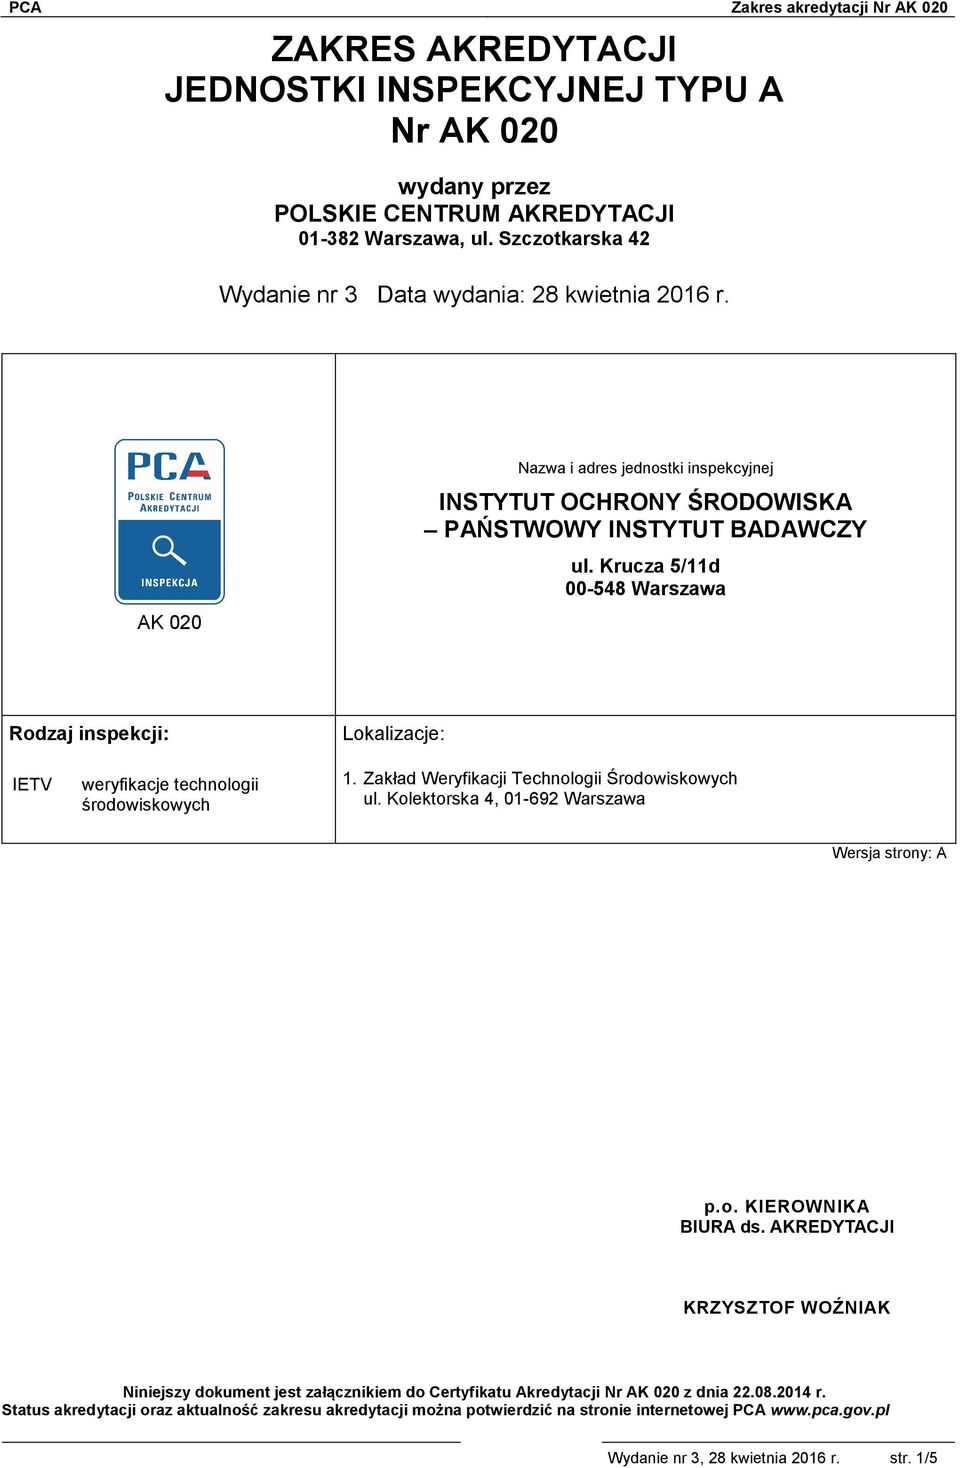 Zakład Weryfikacji Technologii Środowiskowych ul. Kolektorska 4, 01-692 Warszawa p.o. KIEROWNIKA BIURA ds.